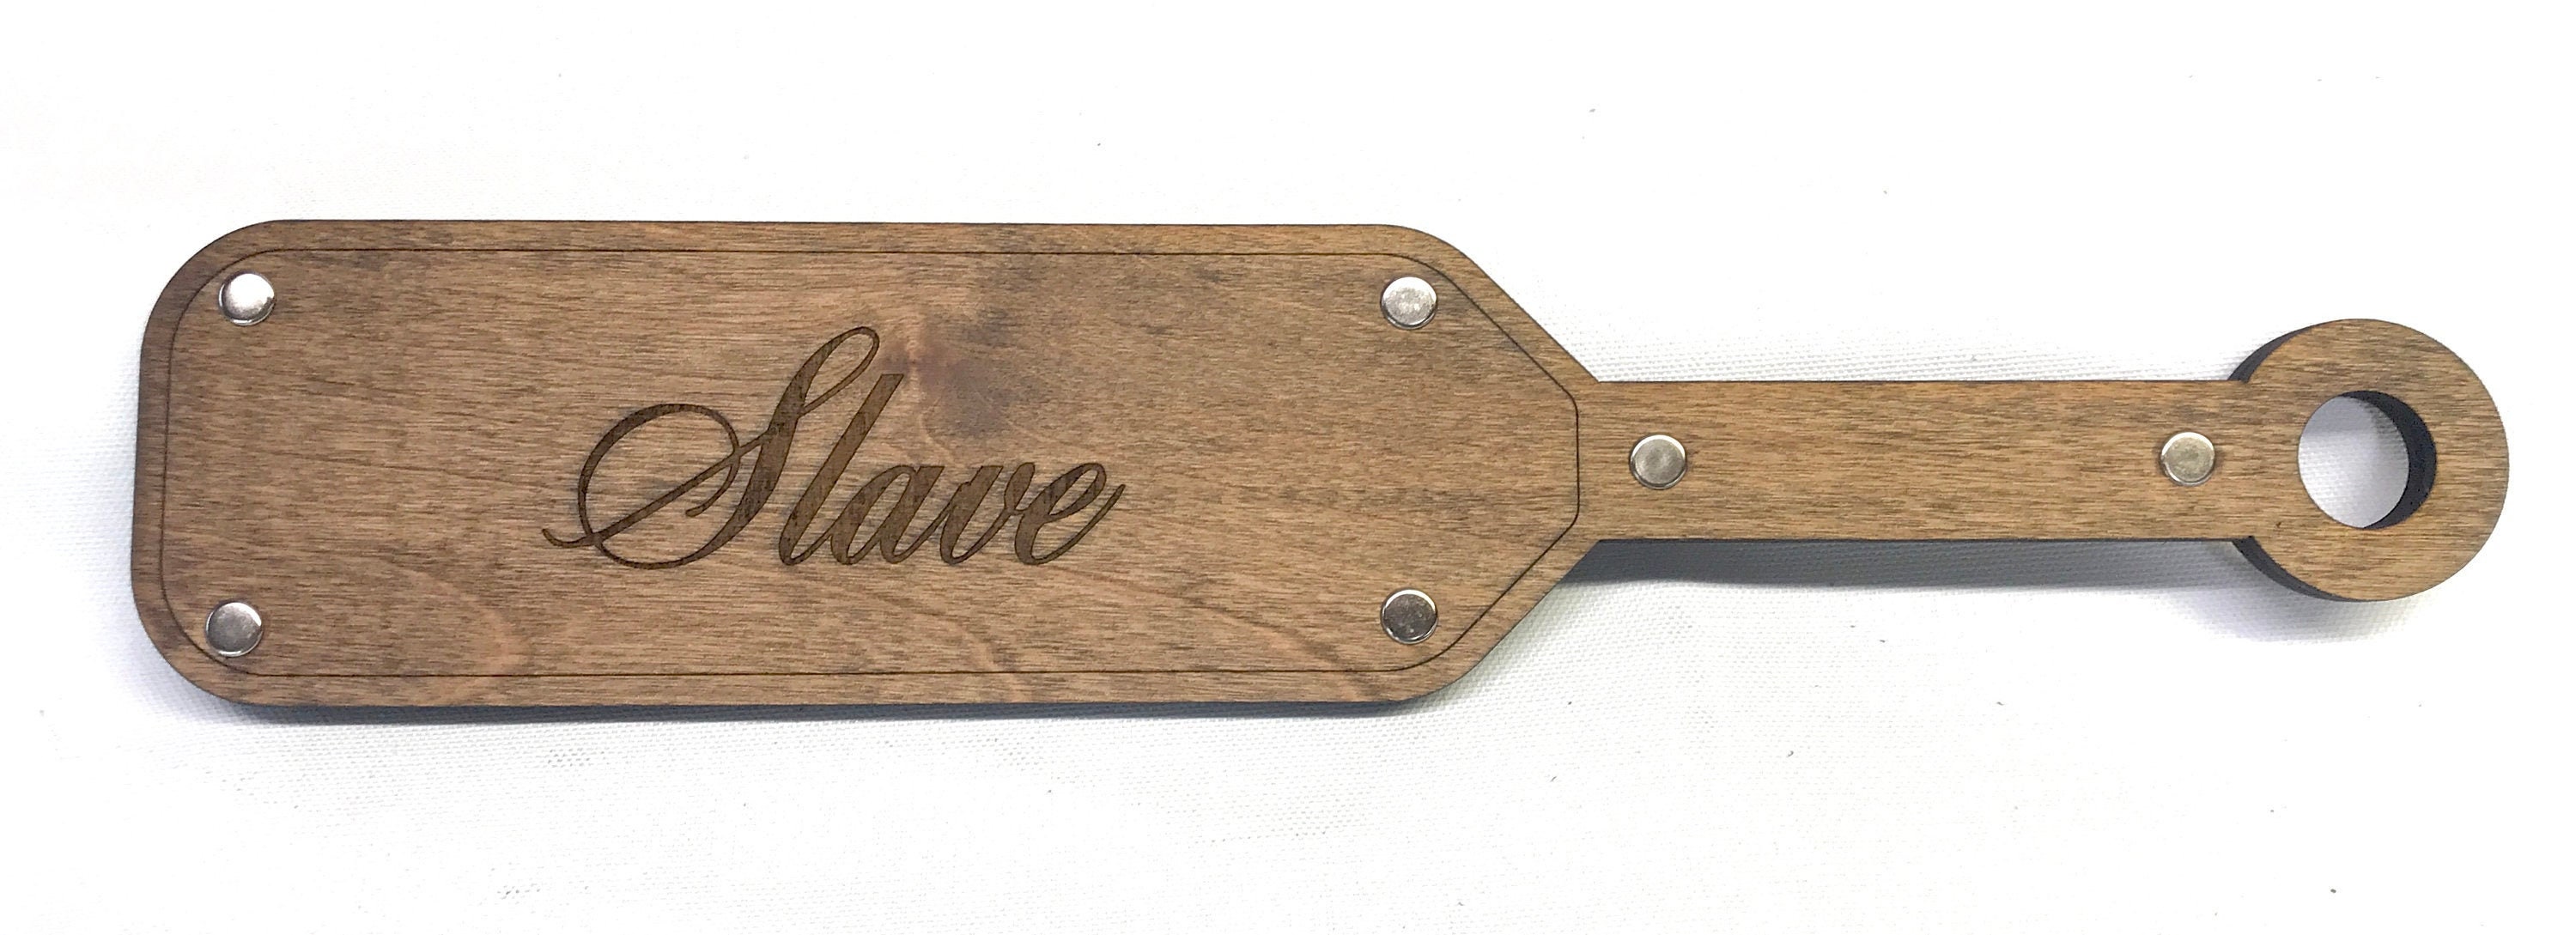 Colorful Wood Spanking Paddle Custom Engraved Spank Slave Whip OTK